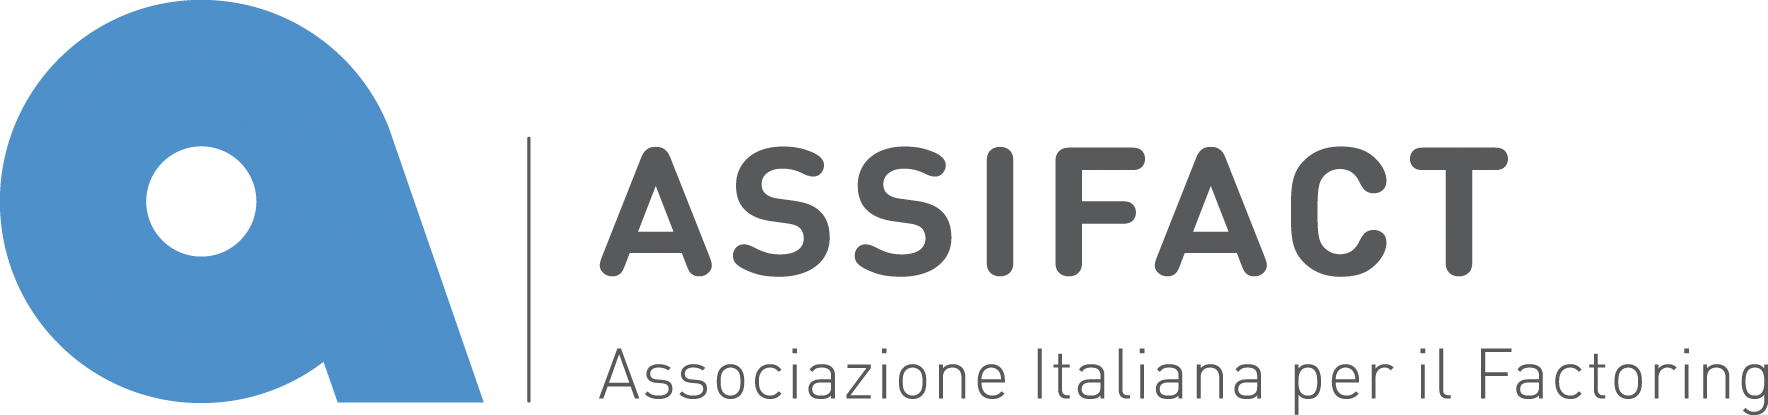 Assifact_logo